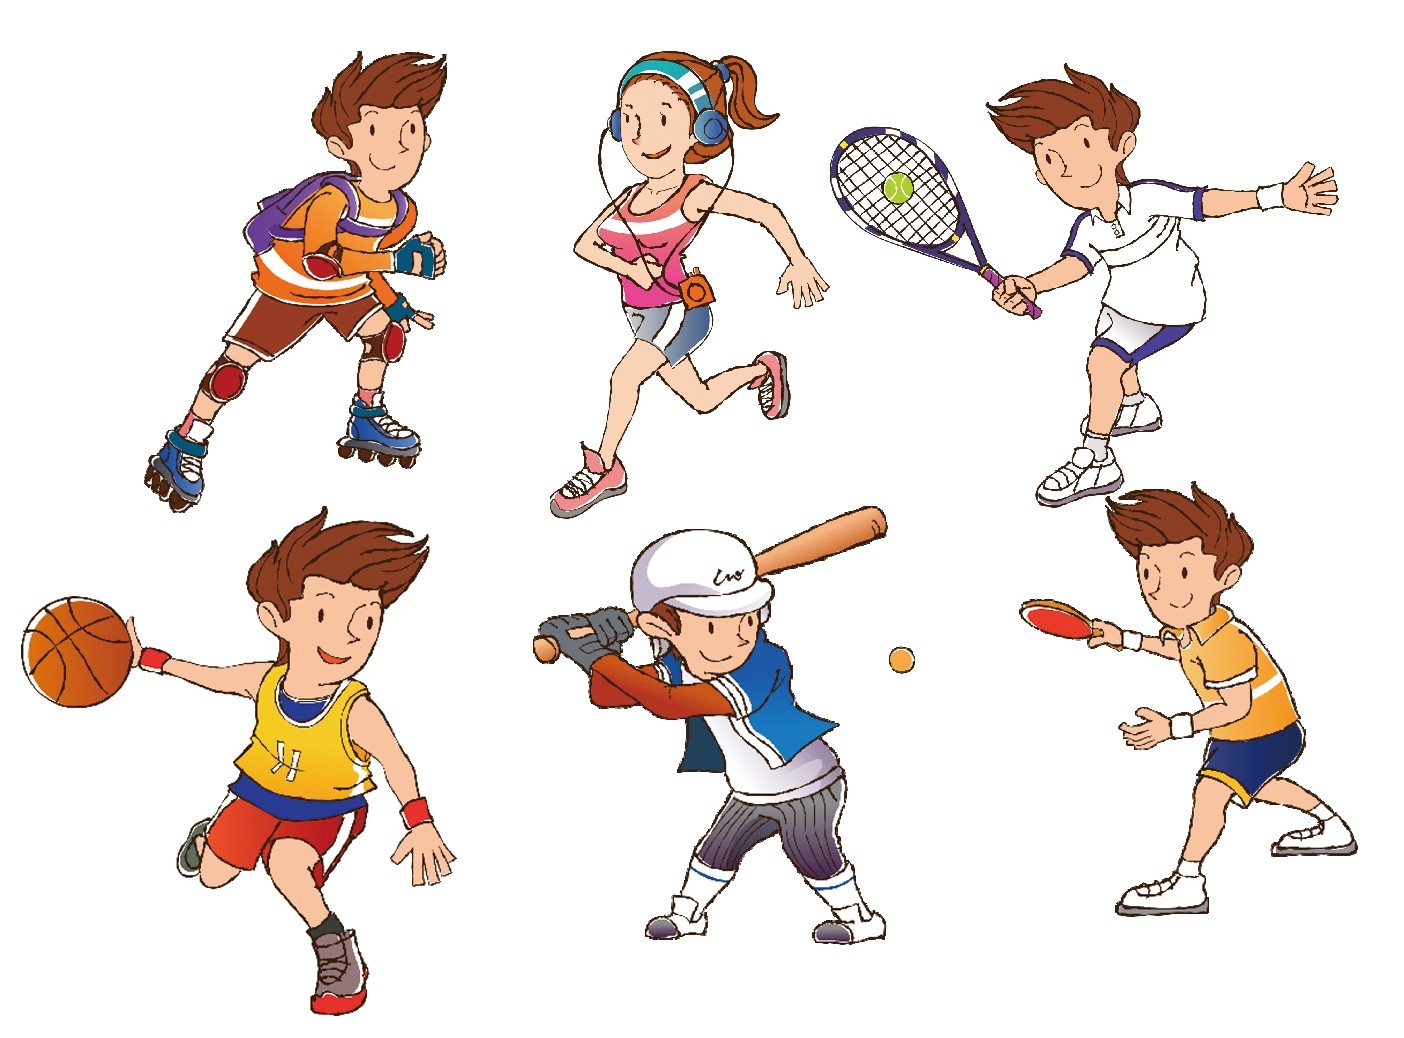 Sports and games we. Спортивные рисунки. Летние спортивные игры для детей. Спорт картинки для детей. Спортивные картинки для презентации.